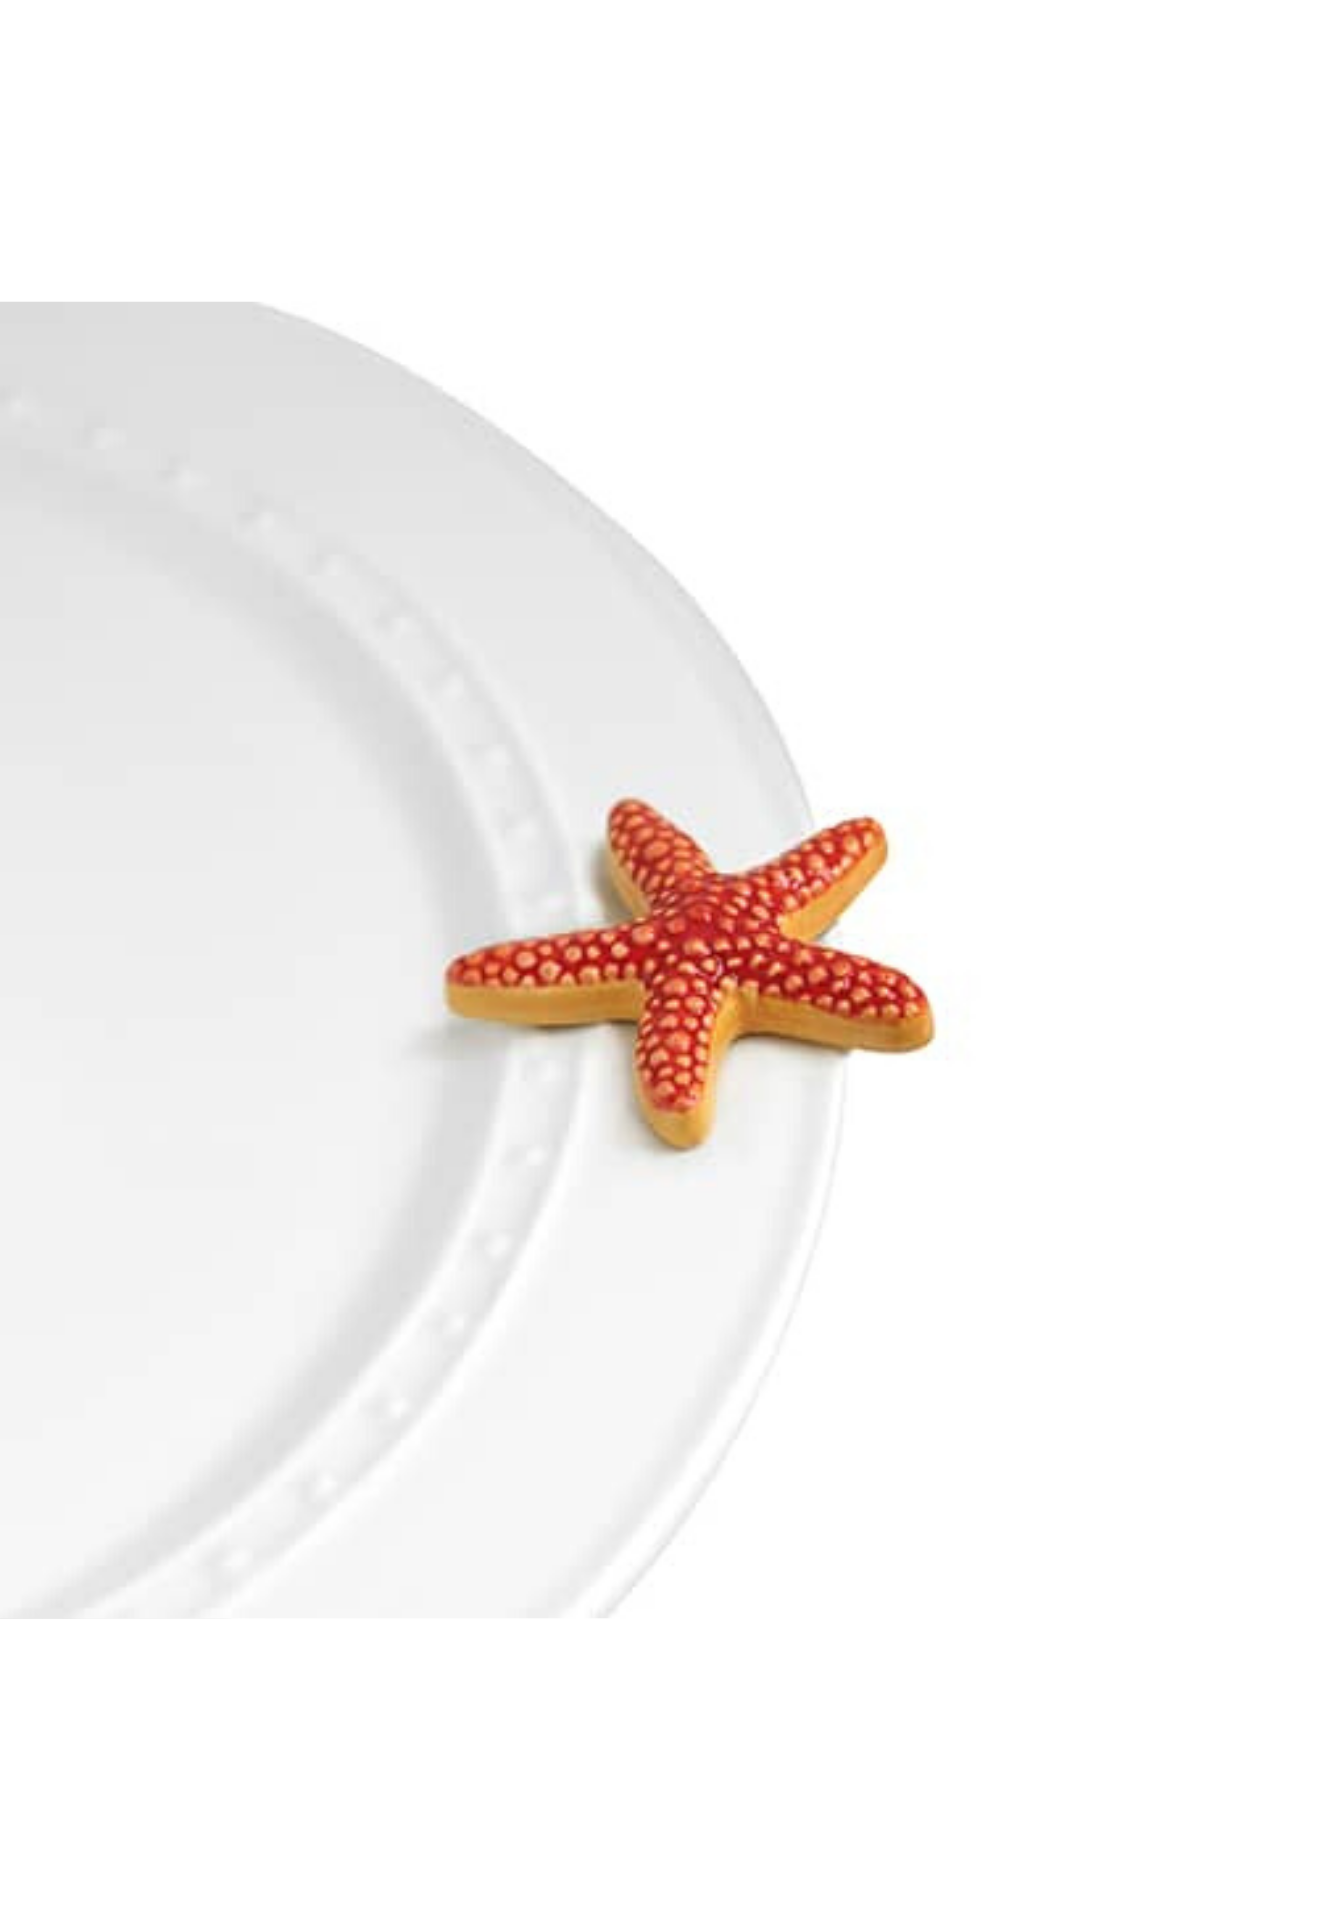 sea star (starfish) A66